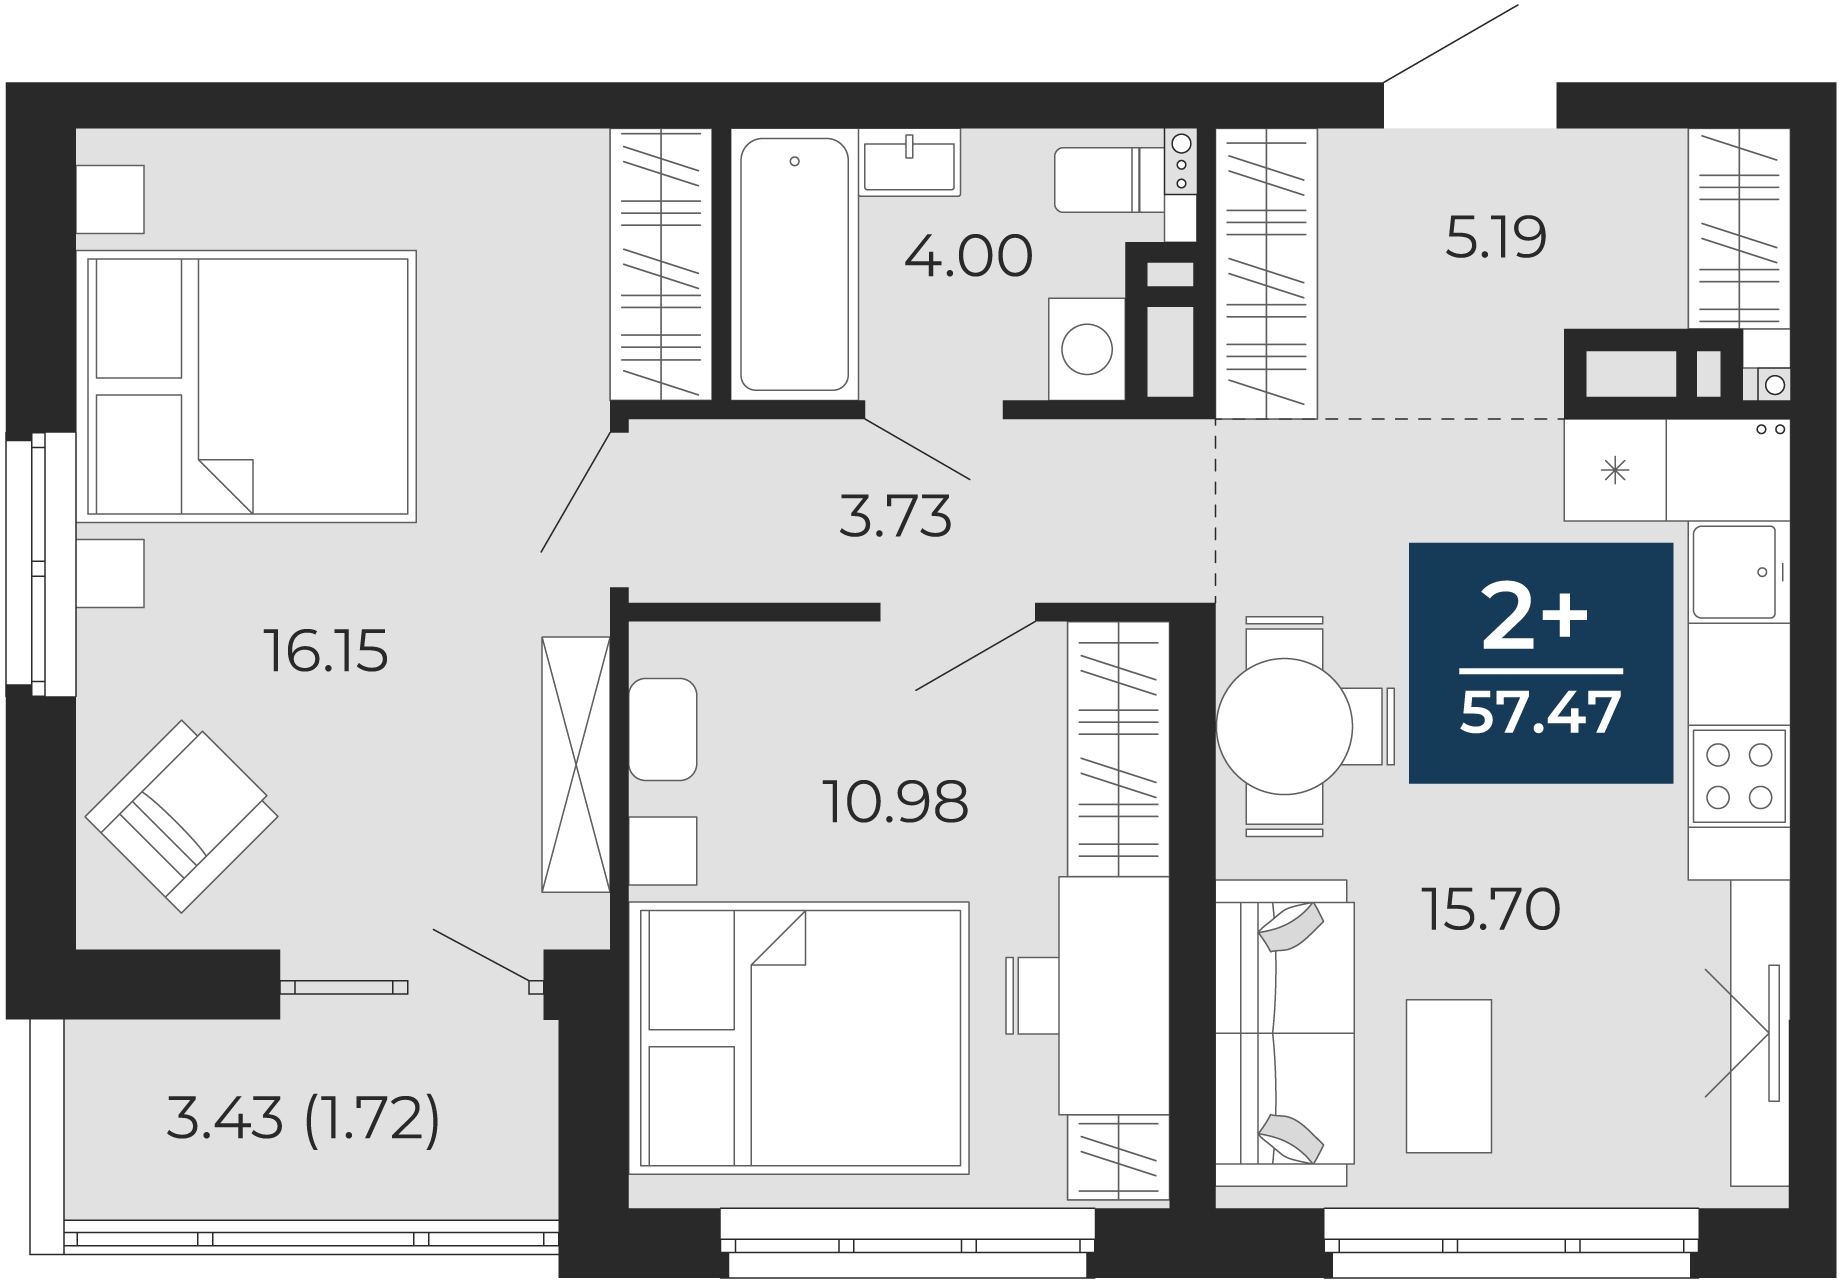 Квартира № 89, 2-комнатная, 57.47 кв. м, 12 этаж